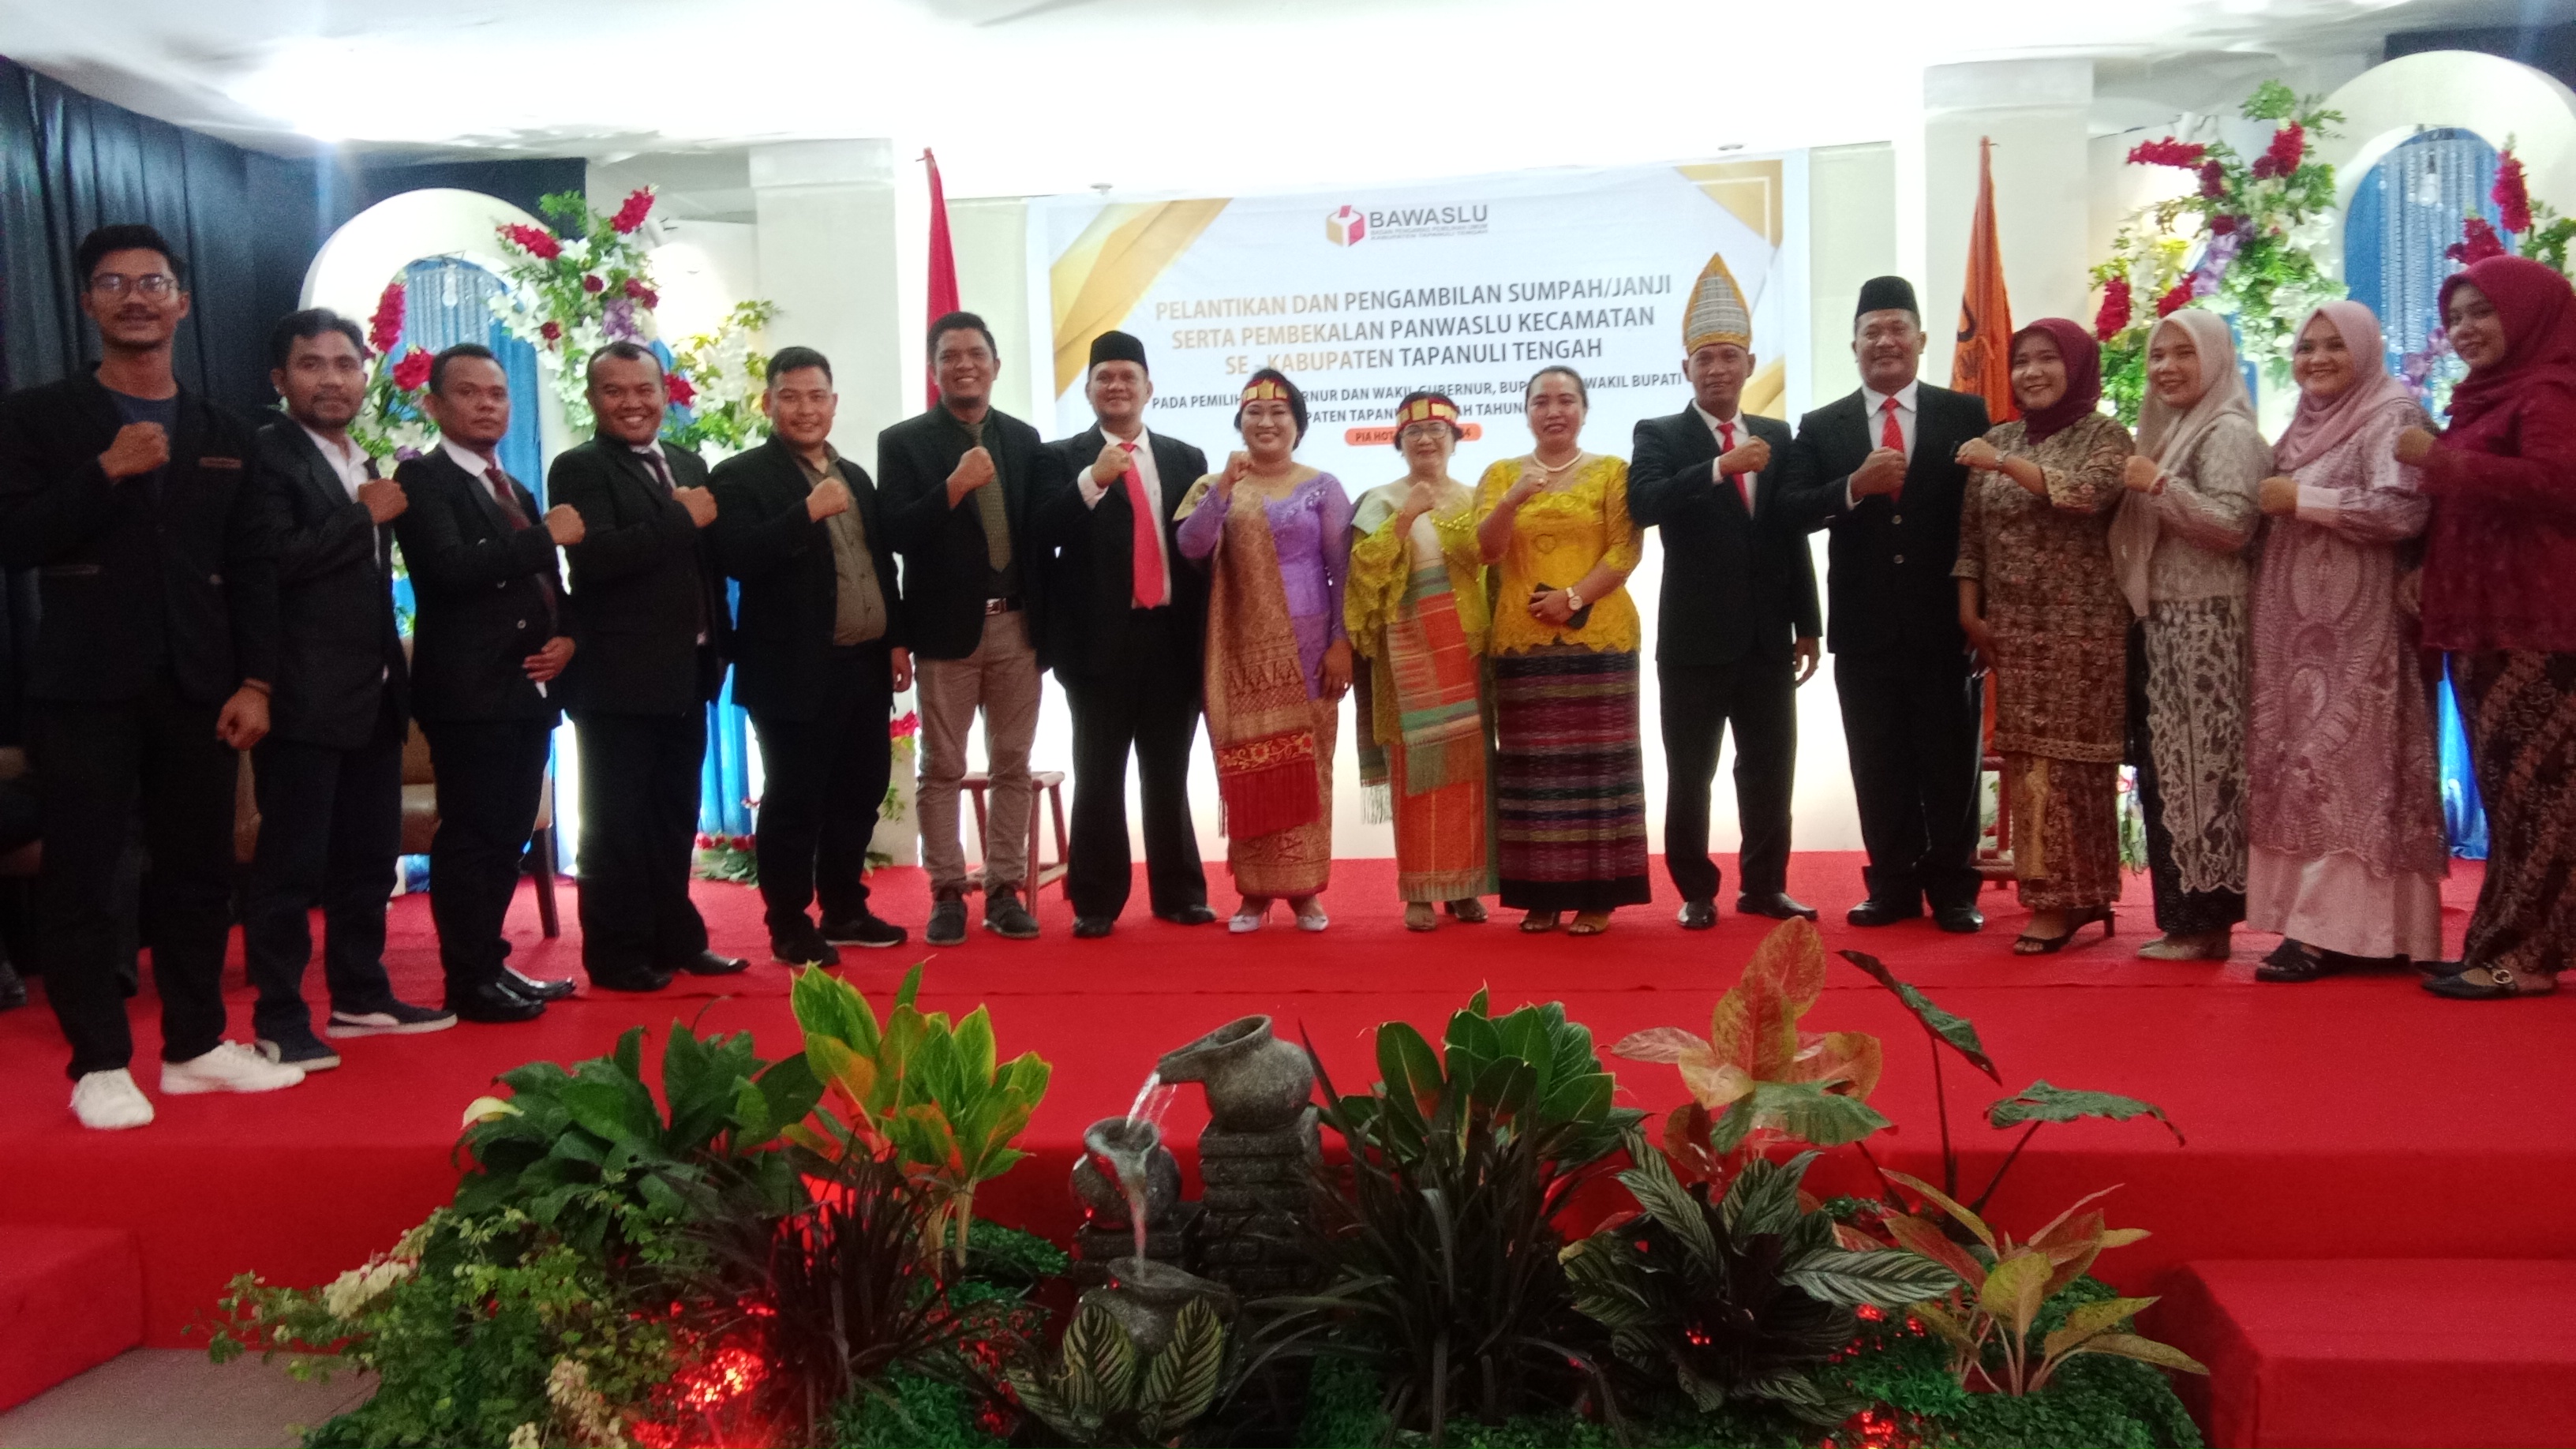 Bawaslu Kabupaten Tapteng Lantik 60 Anggota Pengawas Kecamatan